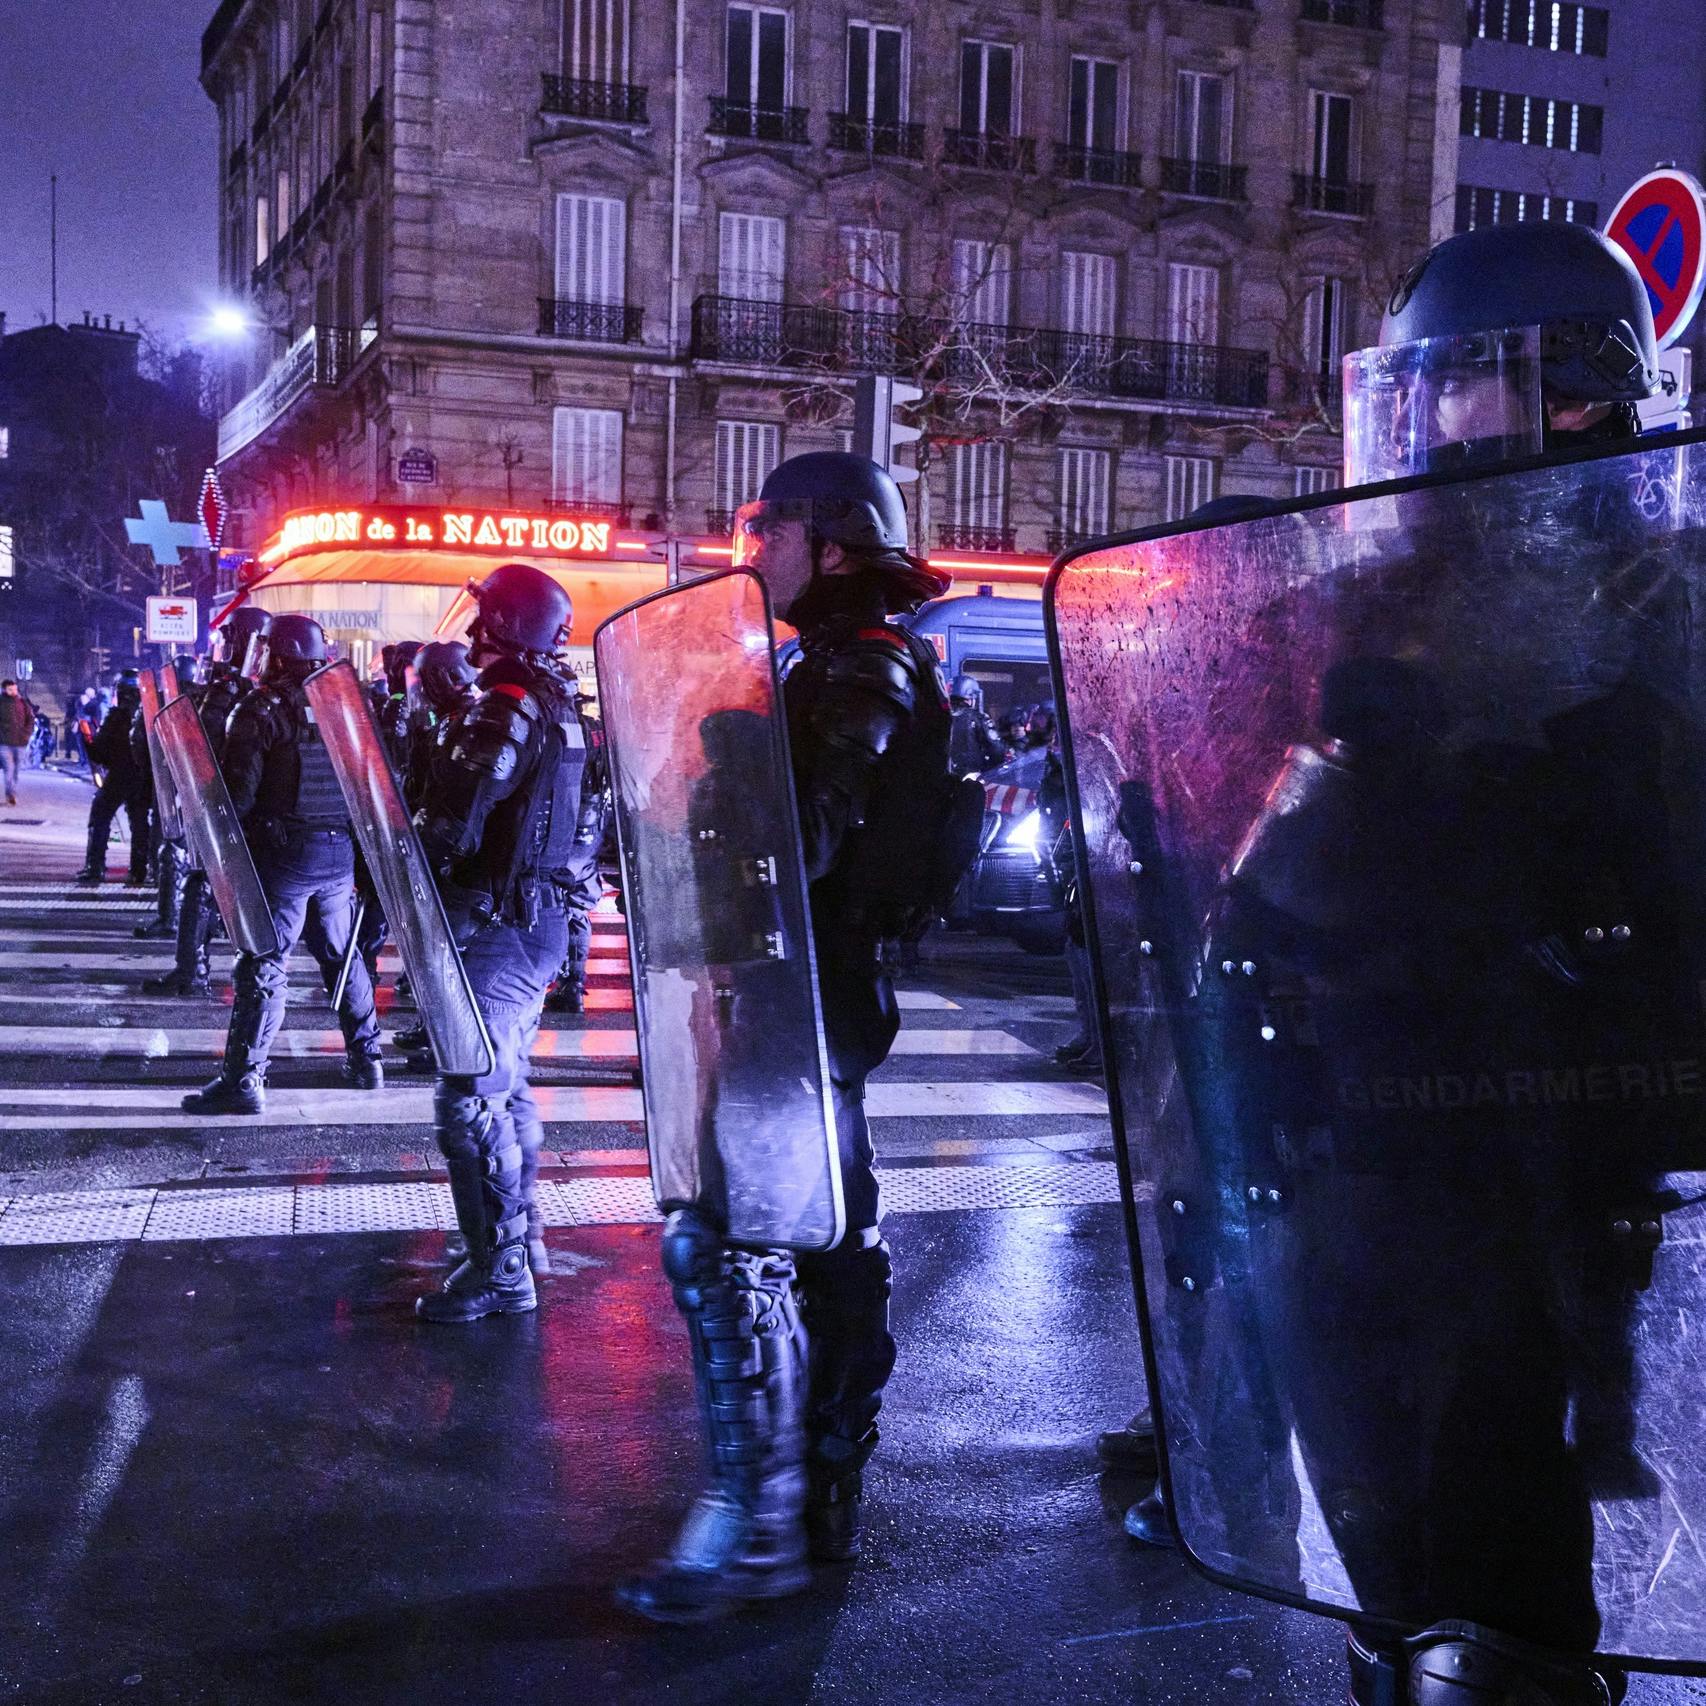 Parijs blijft bij verhoging pensioenleeftijd ondanks protesten